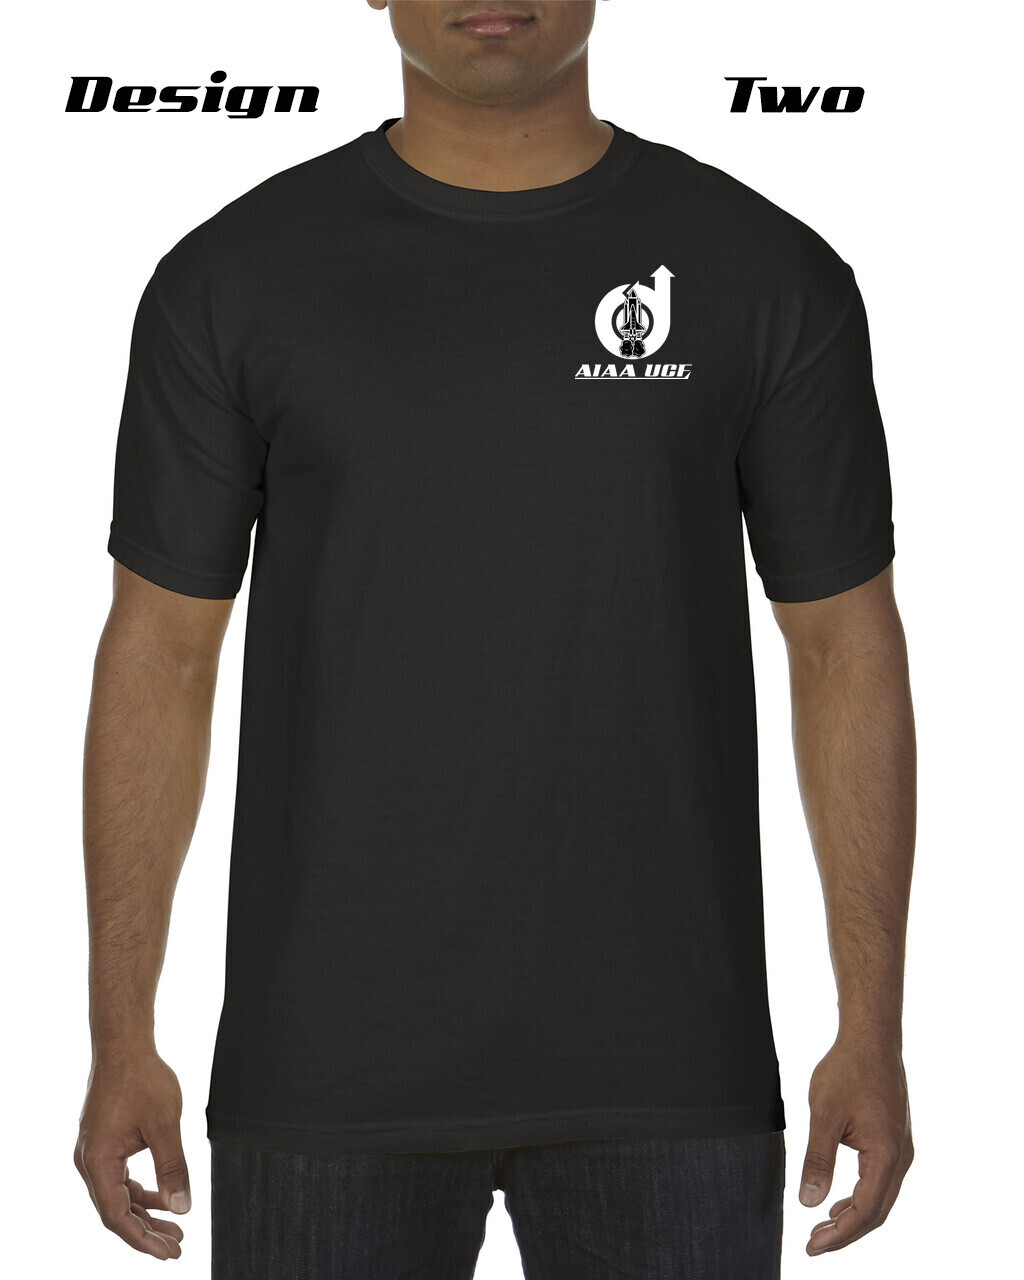 AIAA Annual Design T-Shirts